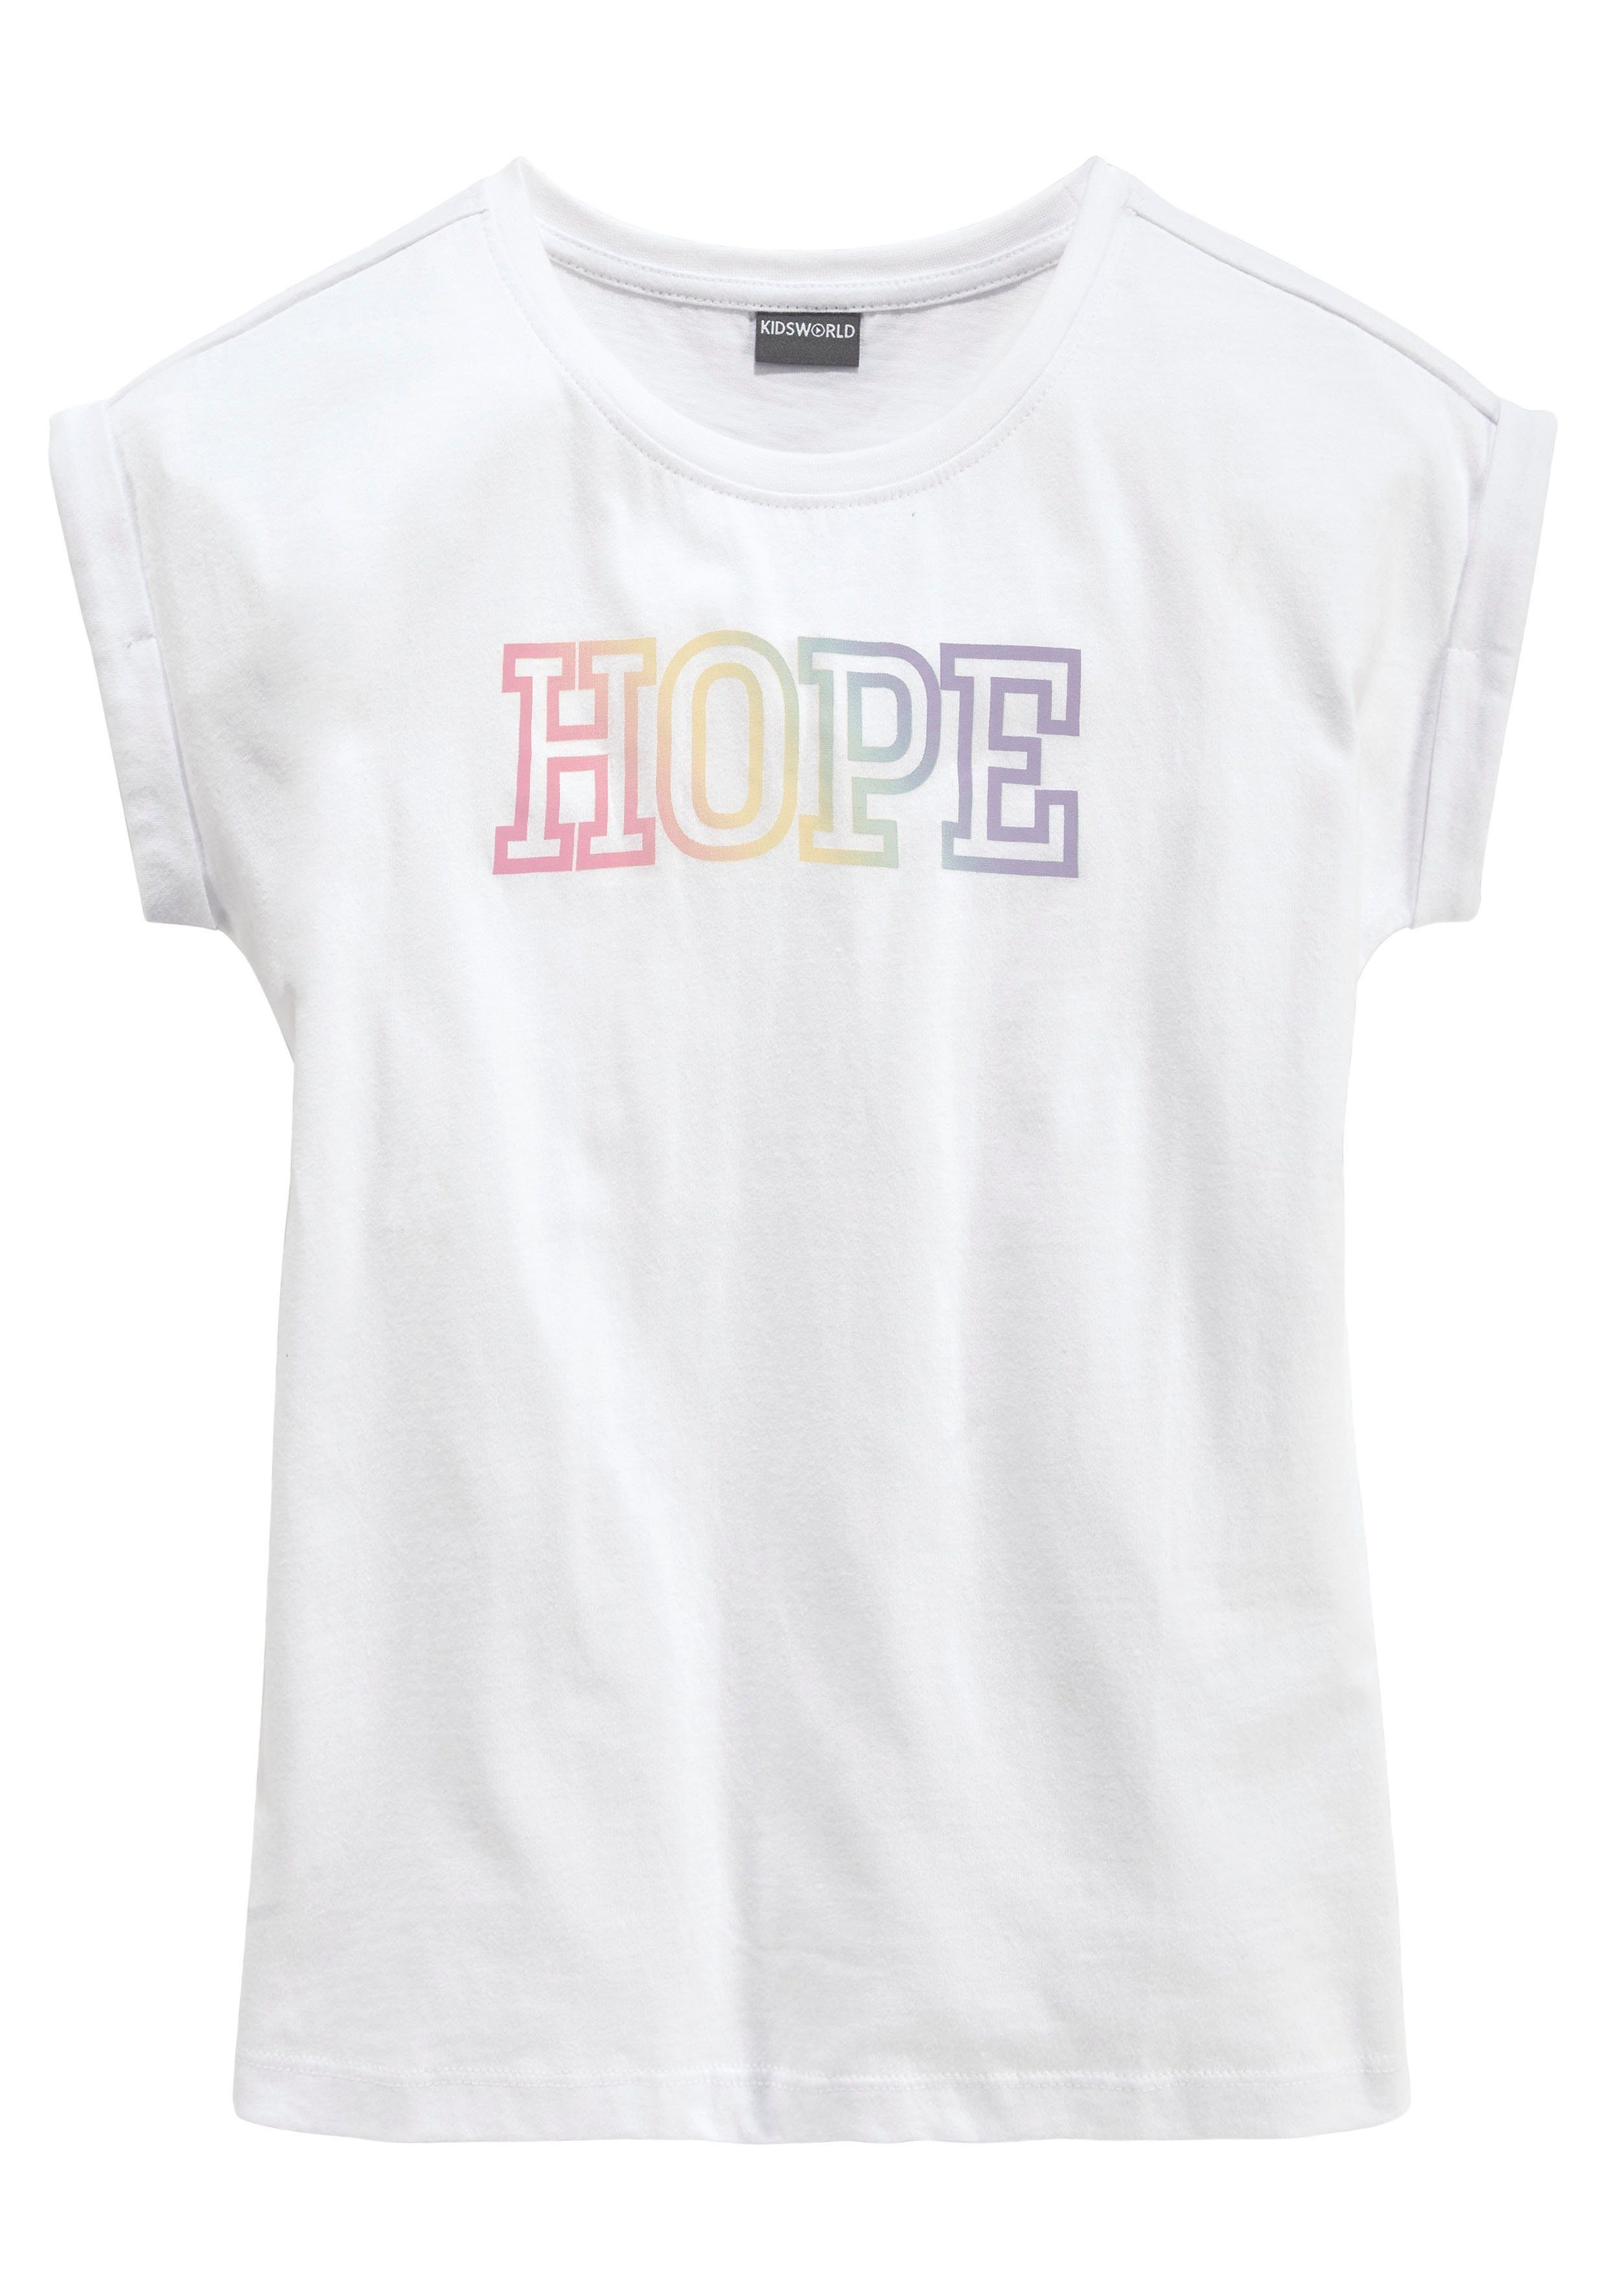 KIDSWORLD T-Shirt HOPE Statementdruck mit